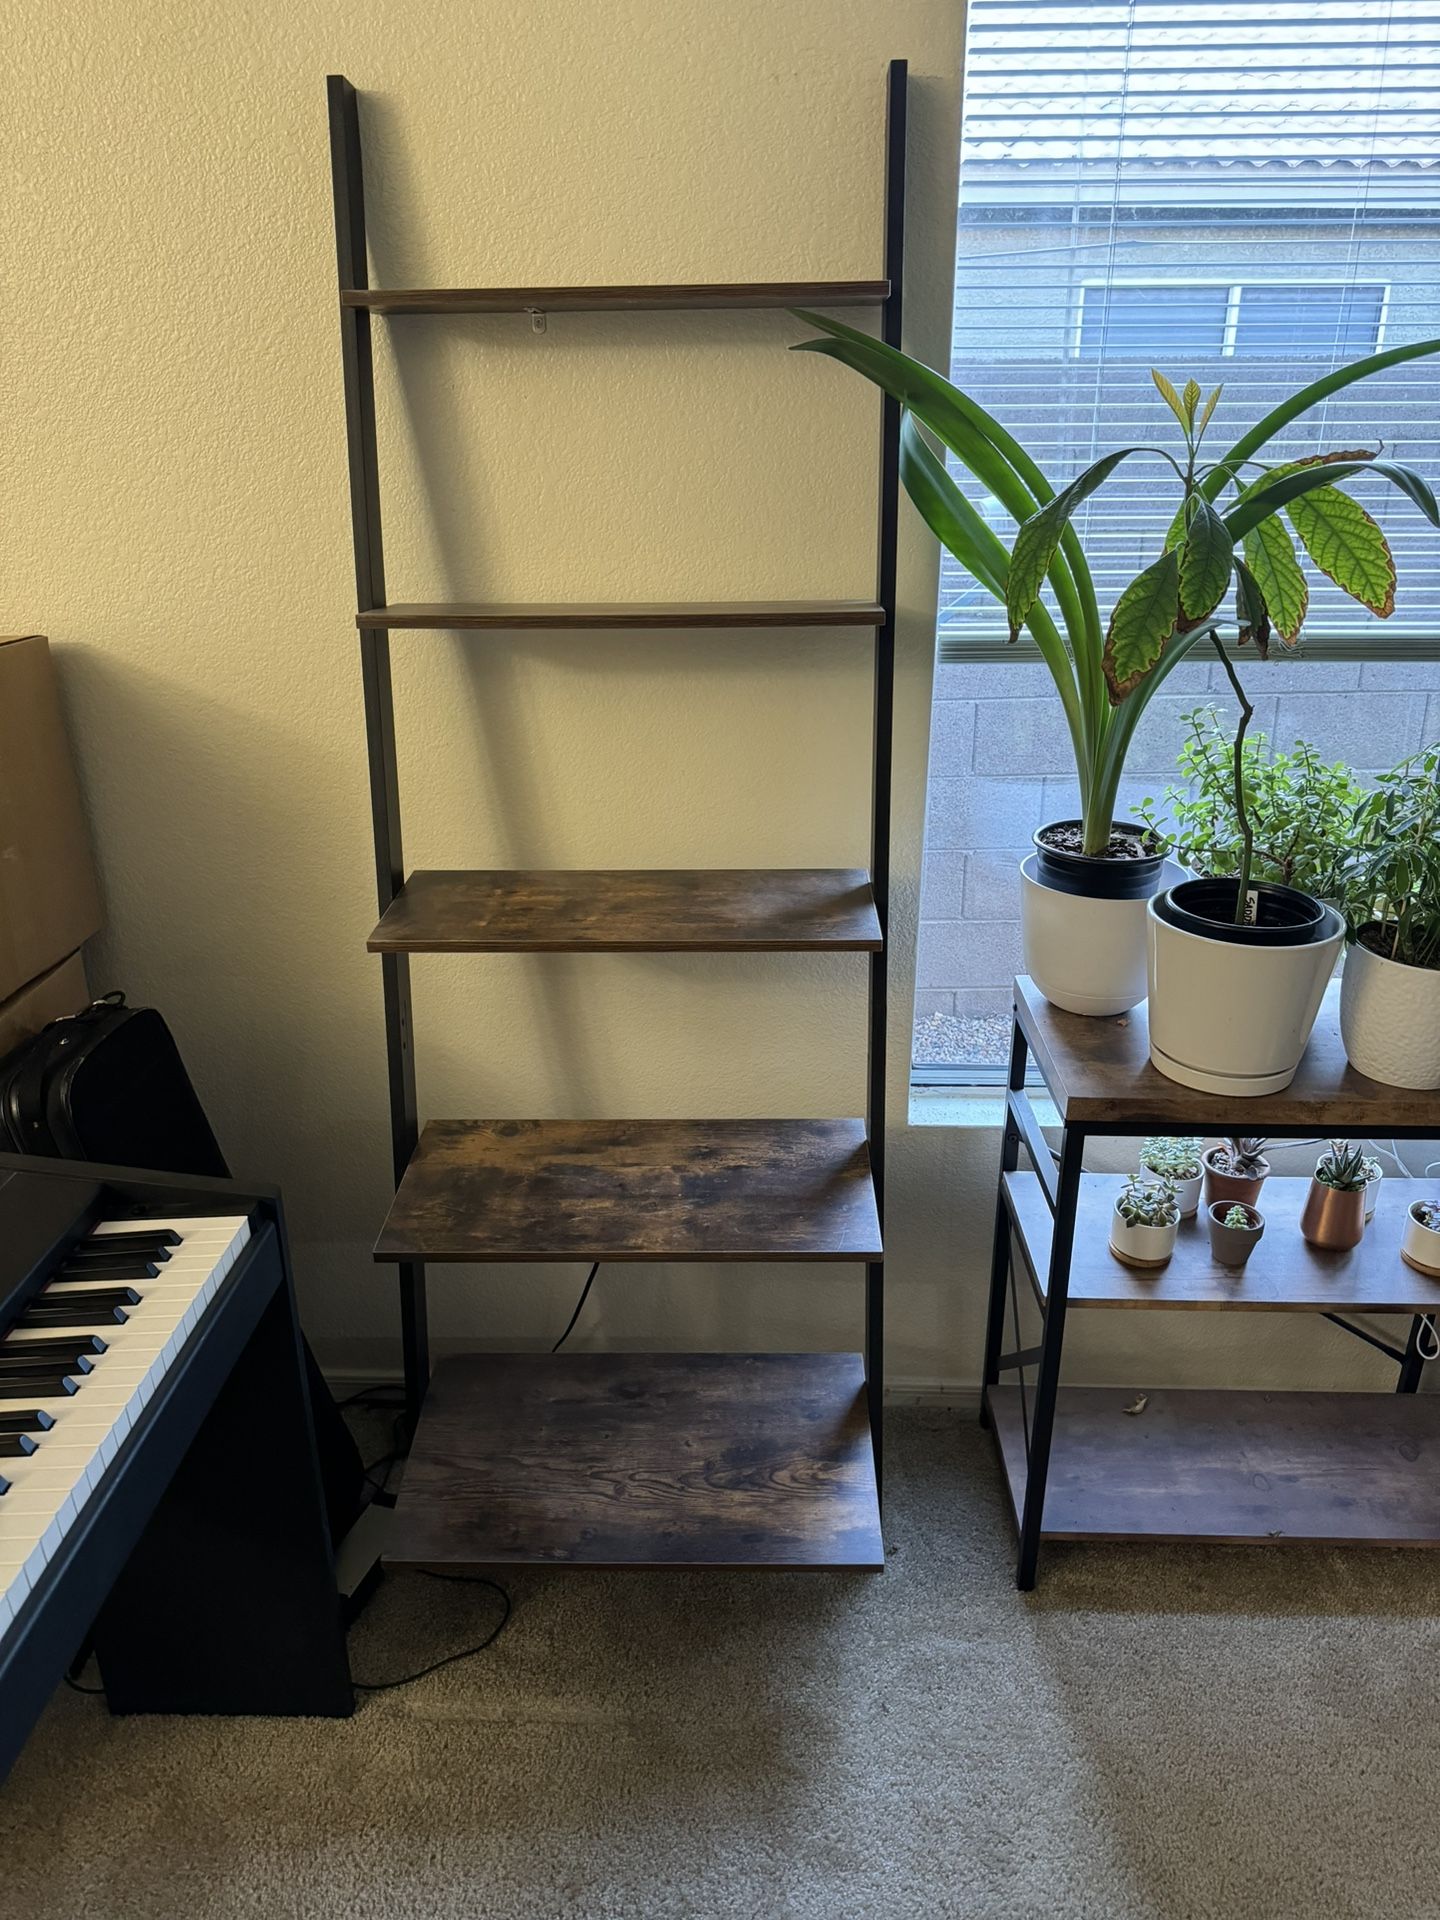 2 Matching Ladder Shelves 